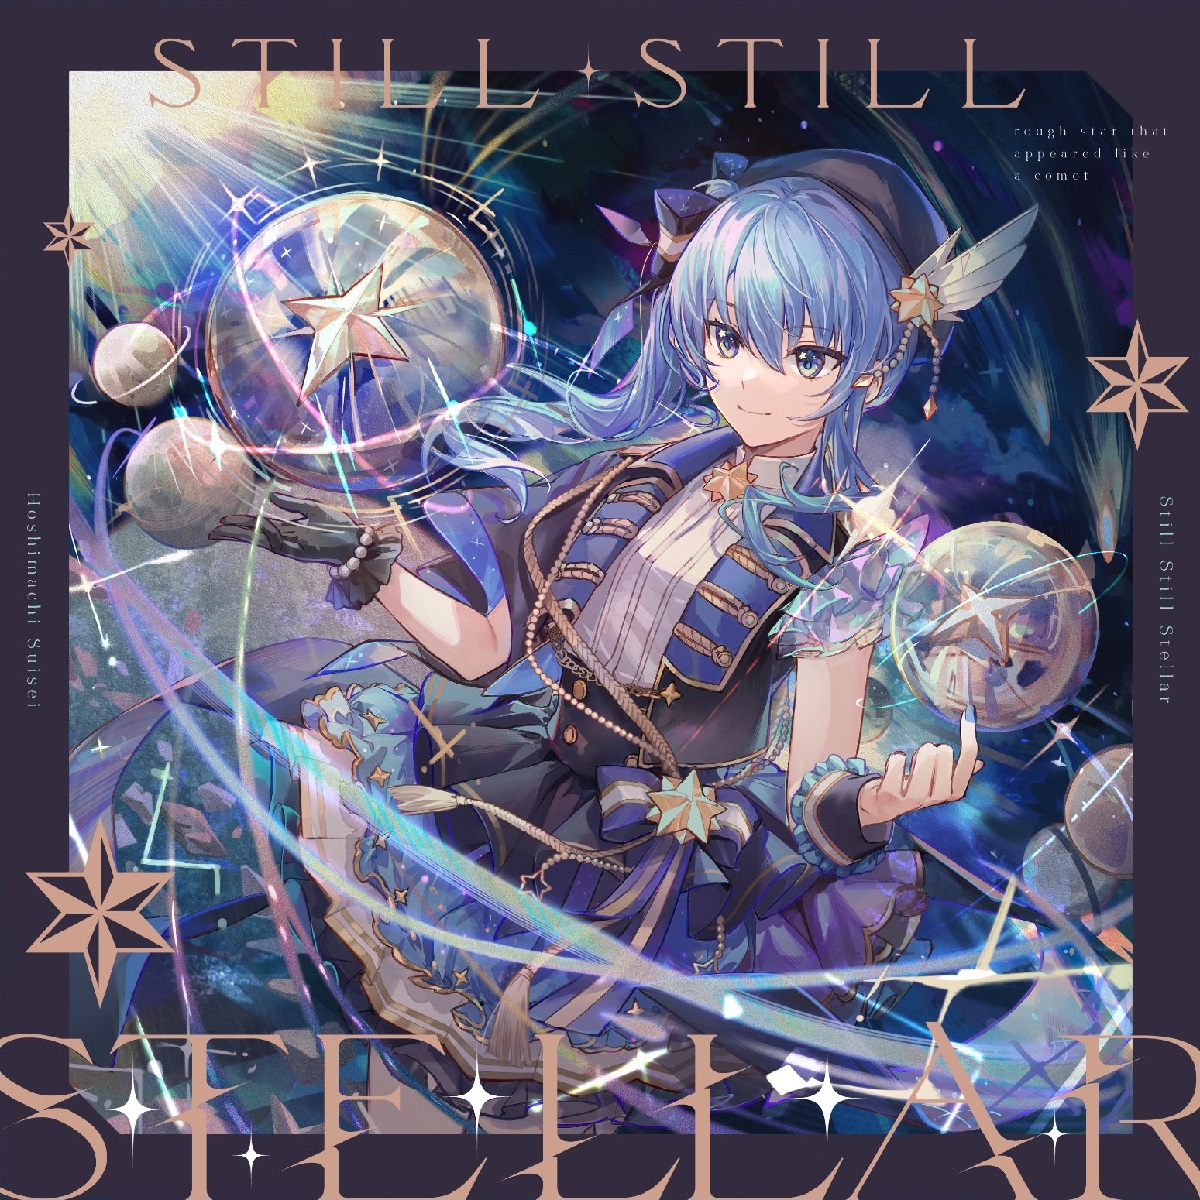 『星街すいせい - Stellar Stellar』収録の『Still Still Stellar』ジャケット